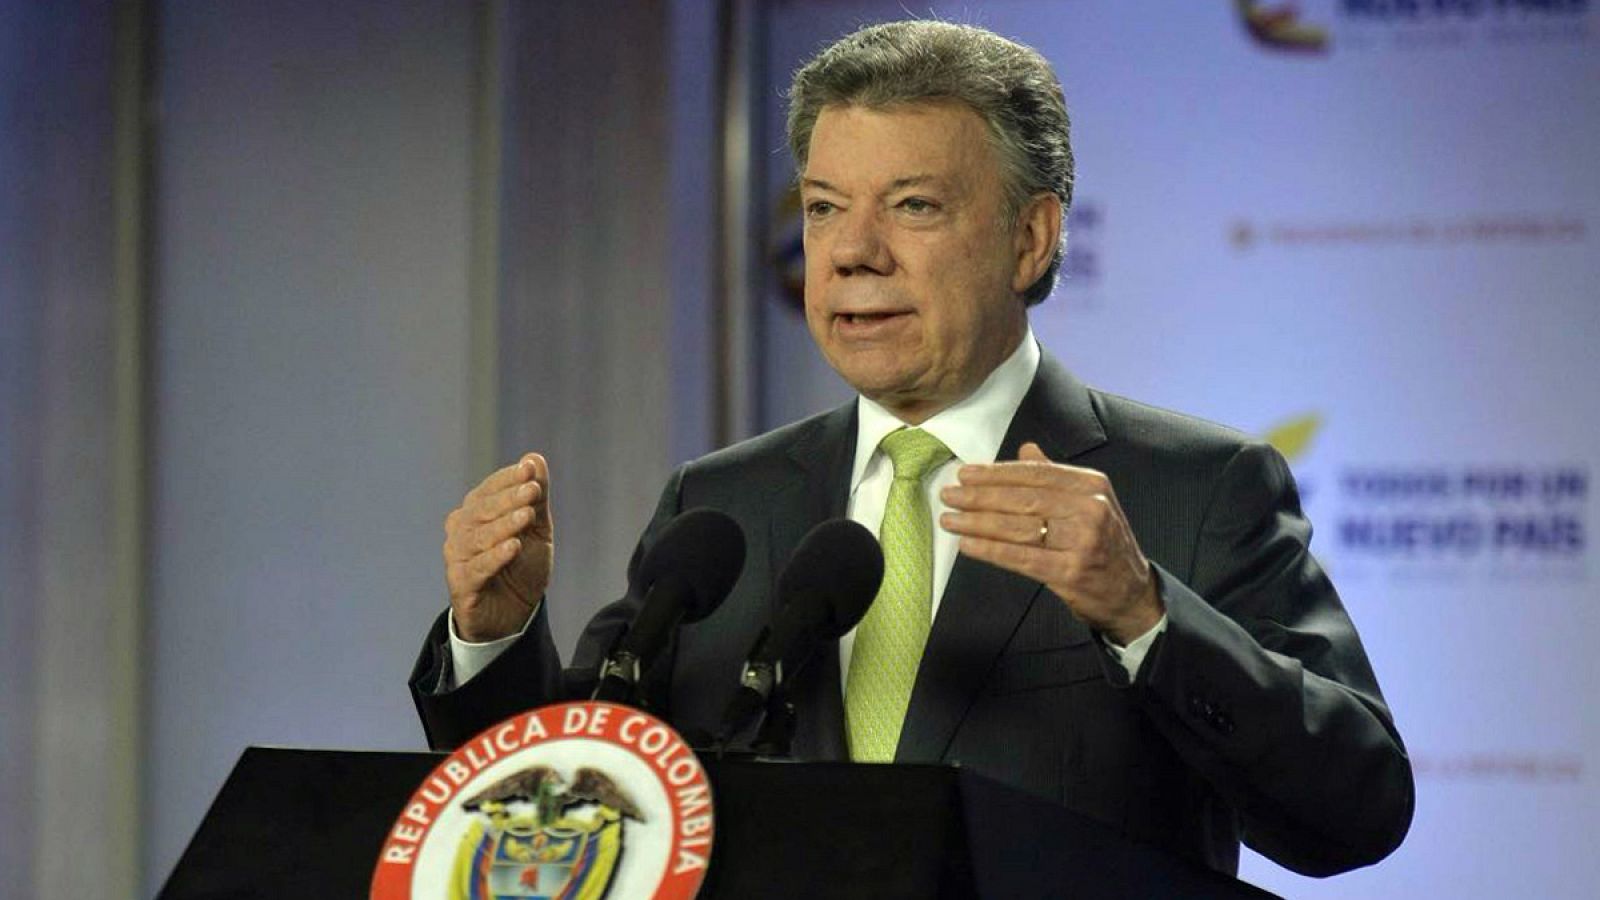 Fotografía cedida por la Presidencia de Colombia del mandatario Juan Manuel Santos en Bogotá.